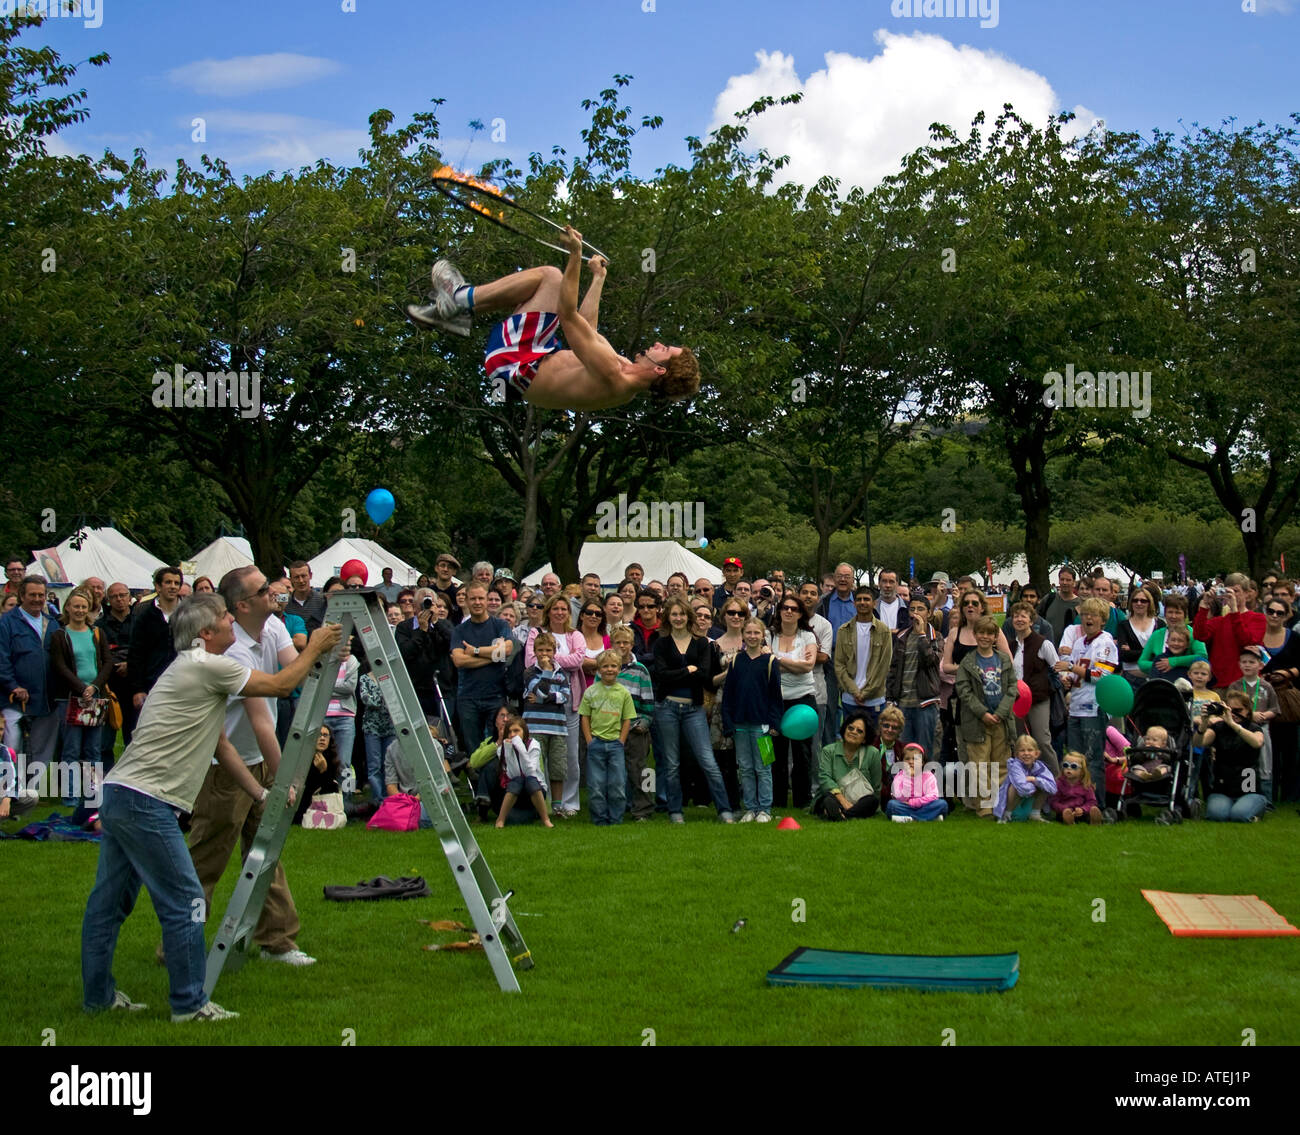 Performer springt in die Luft halten Sie einen Reifen, Edinburgh Fringe Sonntag 2007, Wiesen, Schottland, UK, Europa Stockfoto